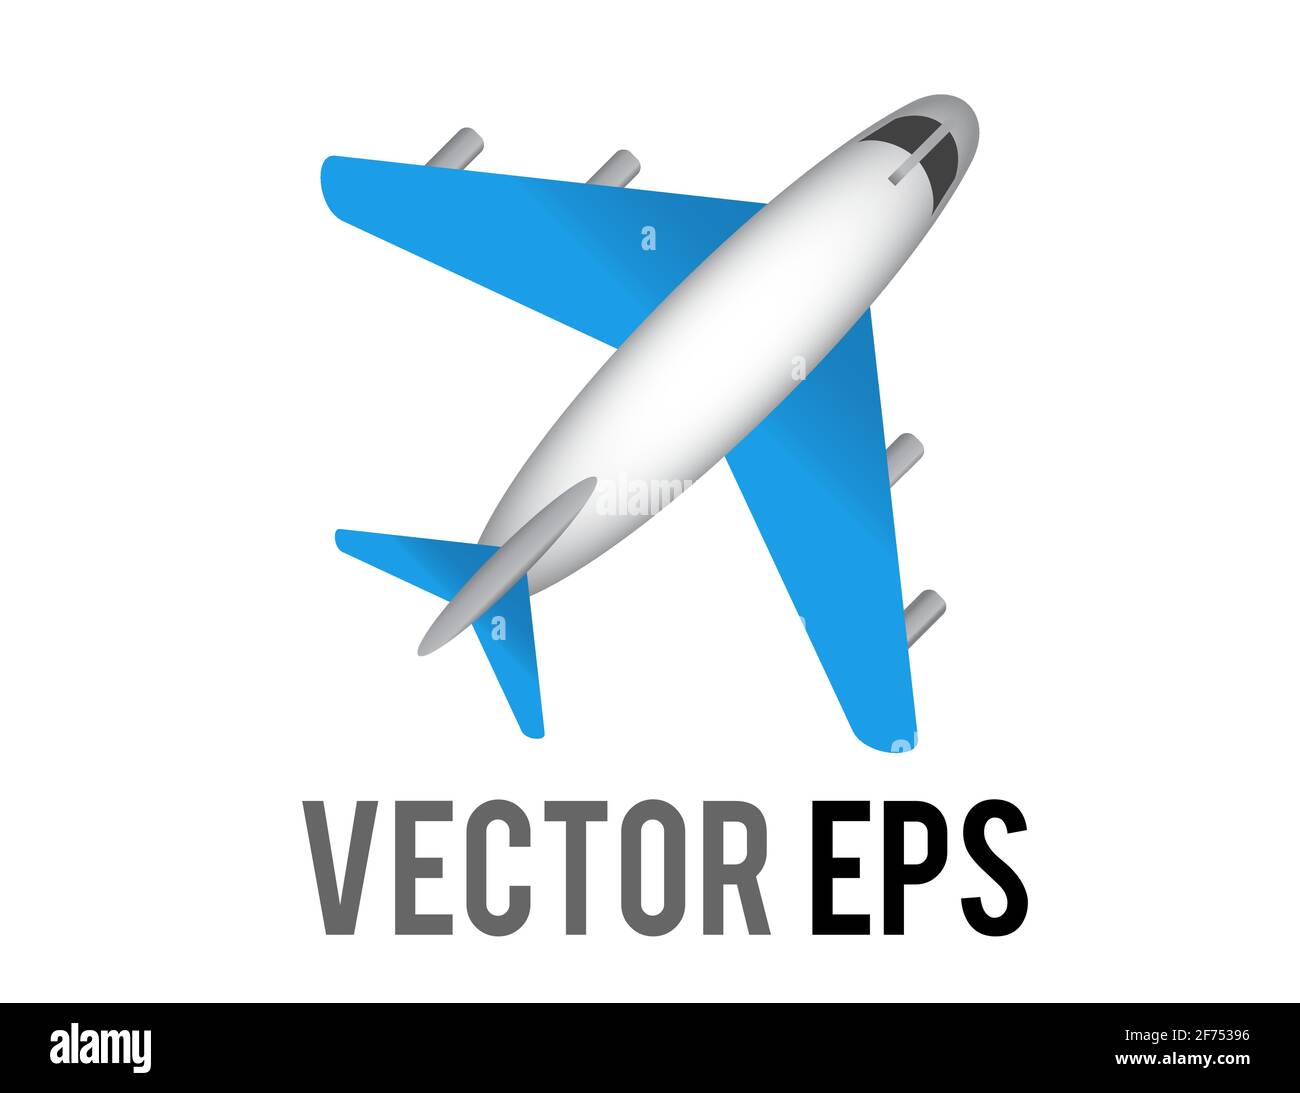 Der Vektor weiß wörtliche Flugzeug-Symbol mit blauen Flügeln und Motoren, repräsentieren globale Flugreise oder Flugmodus Stock Vektor